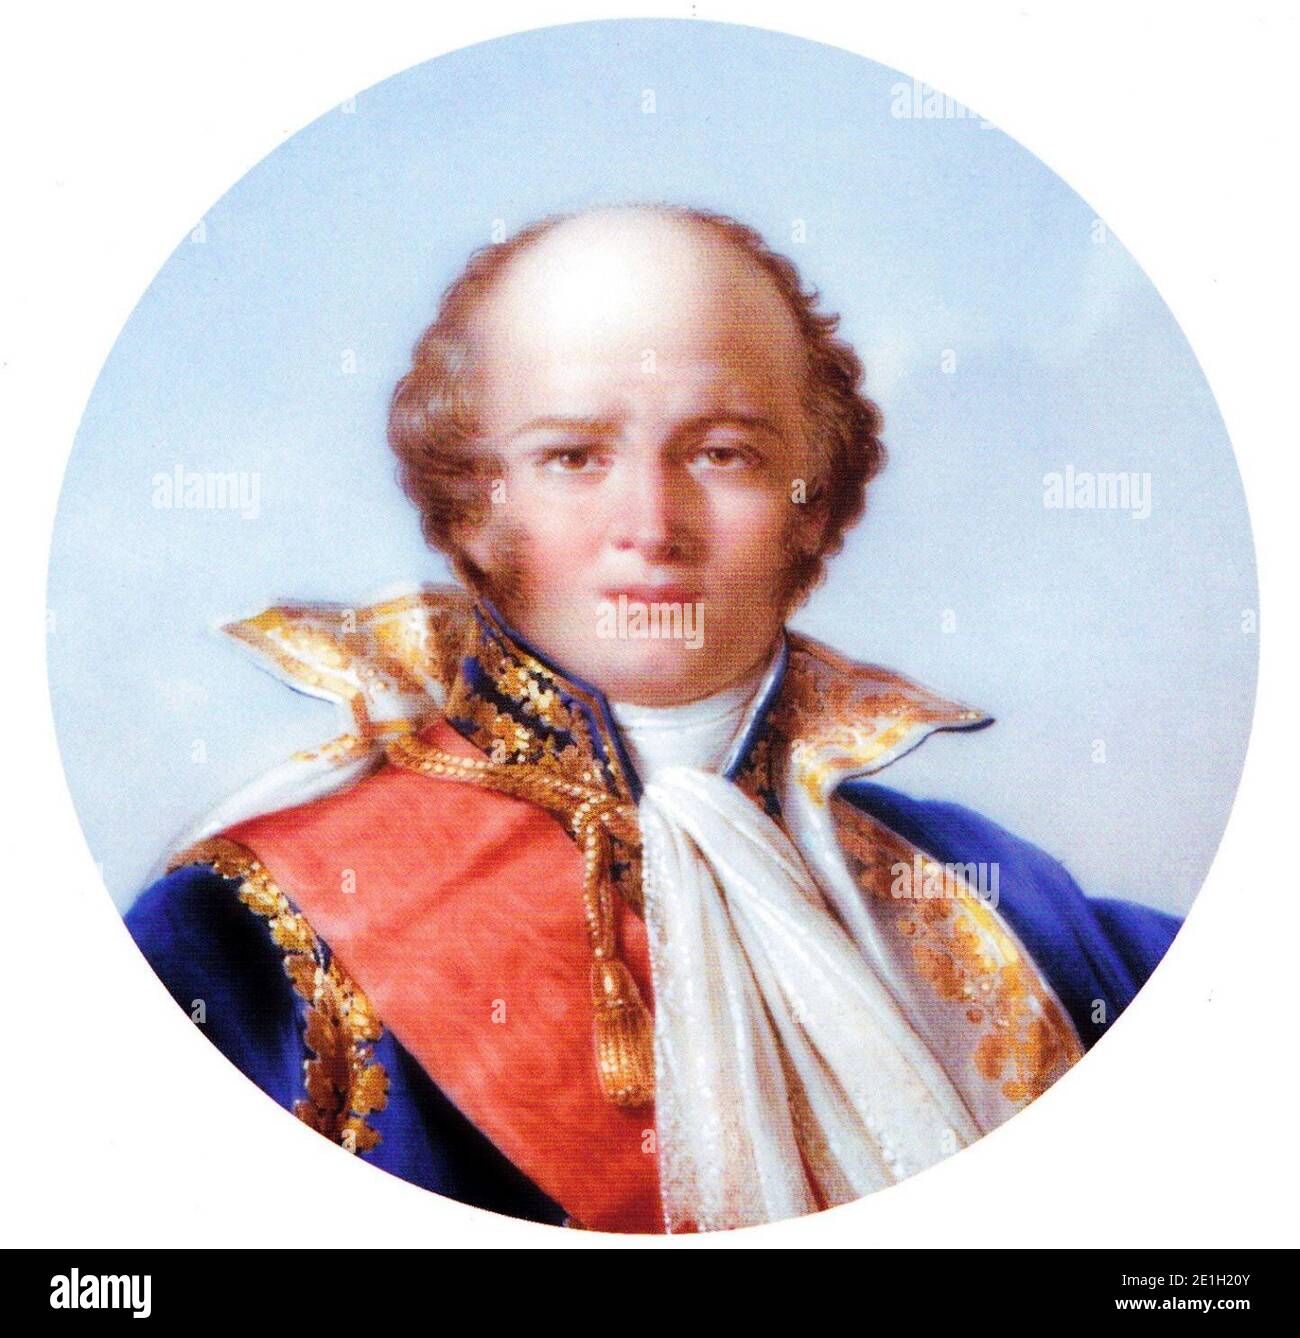 Davout, Louis Nicolas - Public domain portrait print - PICRYL